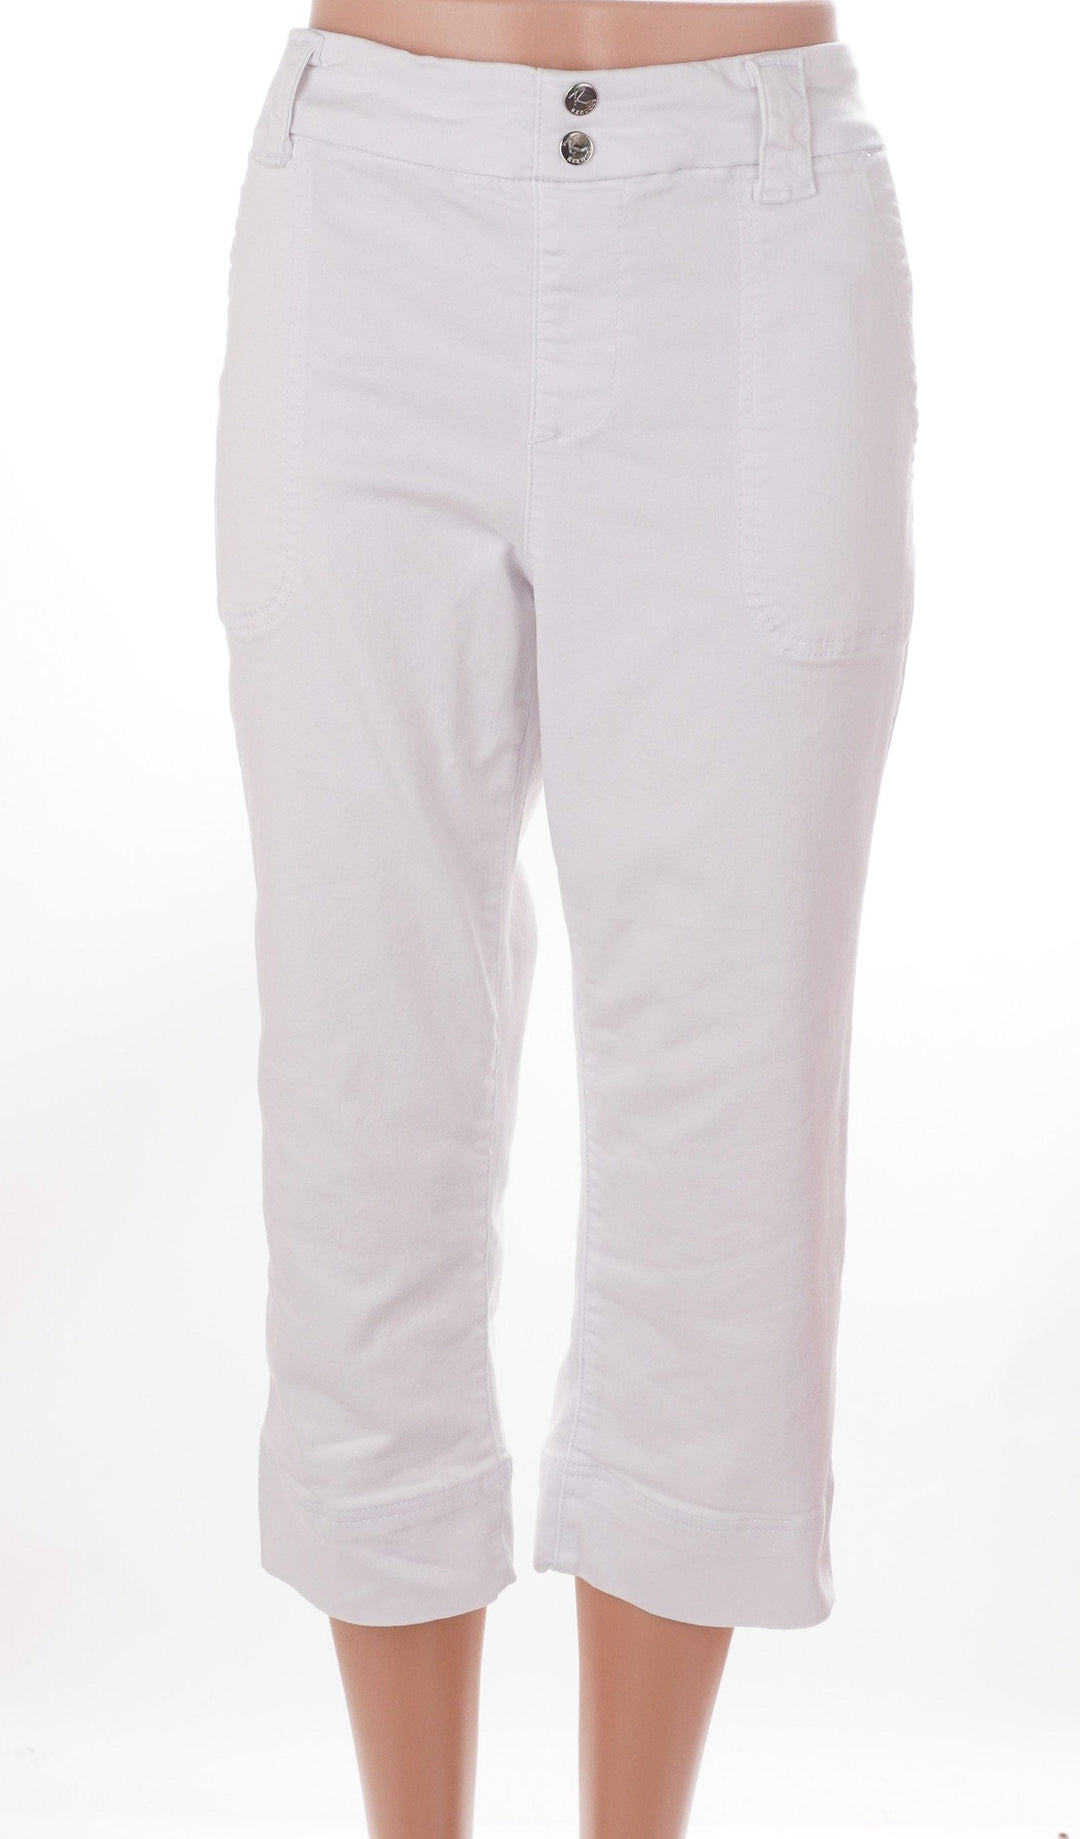 Rekucci Jeans White / 12 / Consigned Rekucci Jeans - White - Size 12